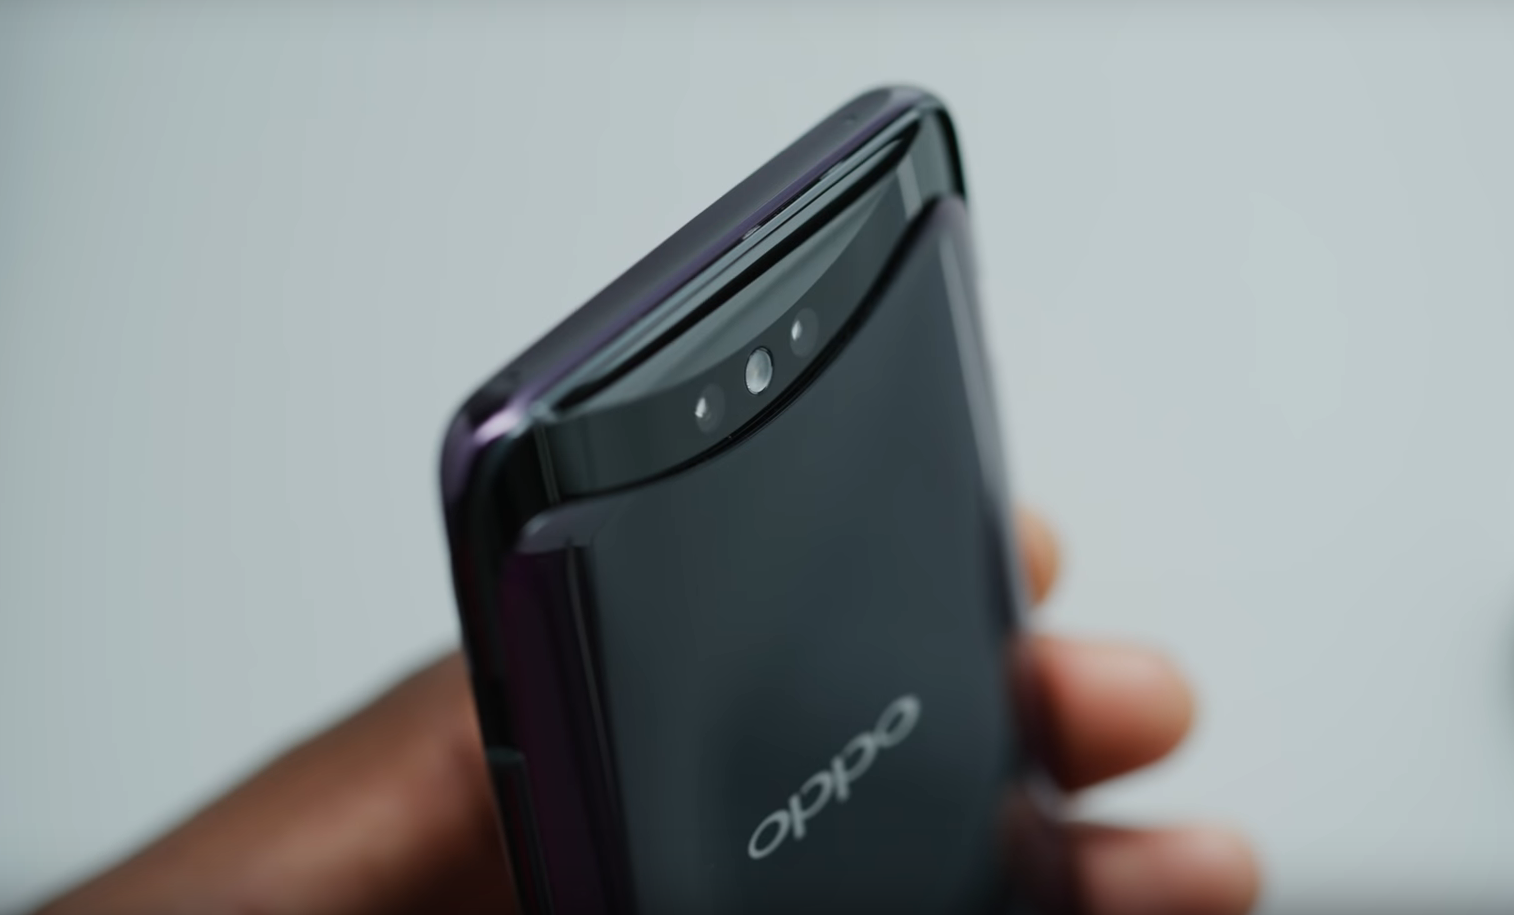 Oversigt over fordele og ulemper ved smartphone Oppo Find X